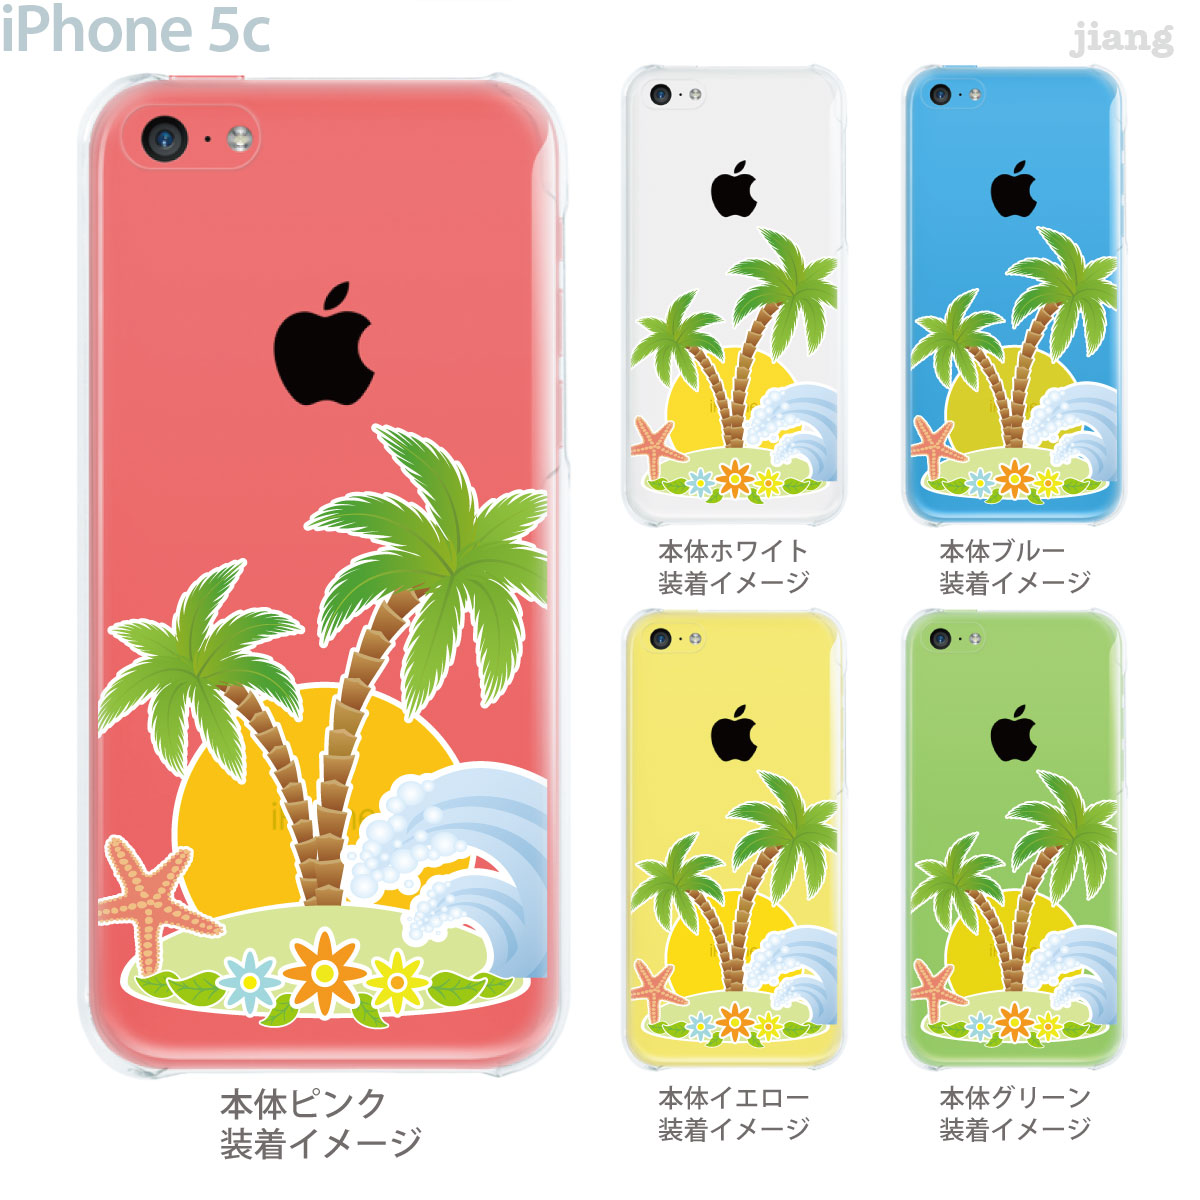 新生活 iPhone5c ケース アイフォン5c カバー クリアケース iPhone5cケース iPhone5cカバー クリアーアーツ iPhone イラスト クリア 南の島 スマホケース 21-ip5c-ca0054 定番スタイル